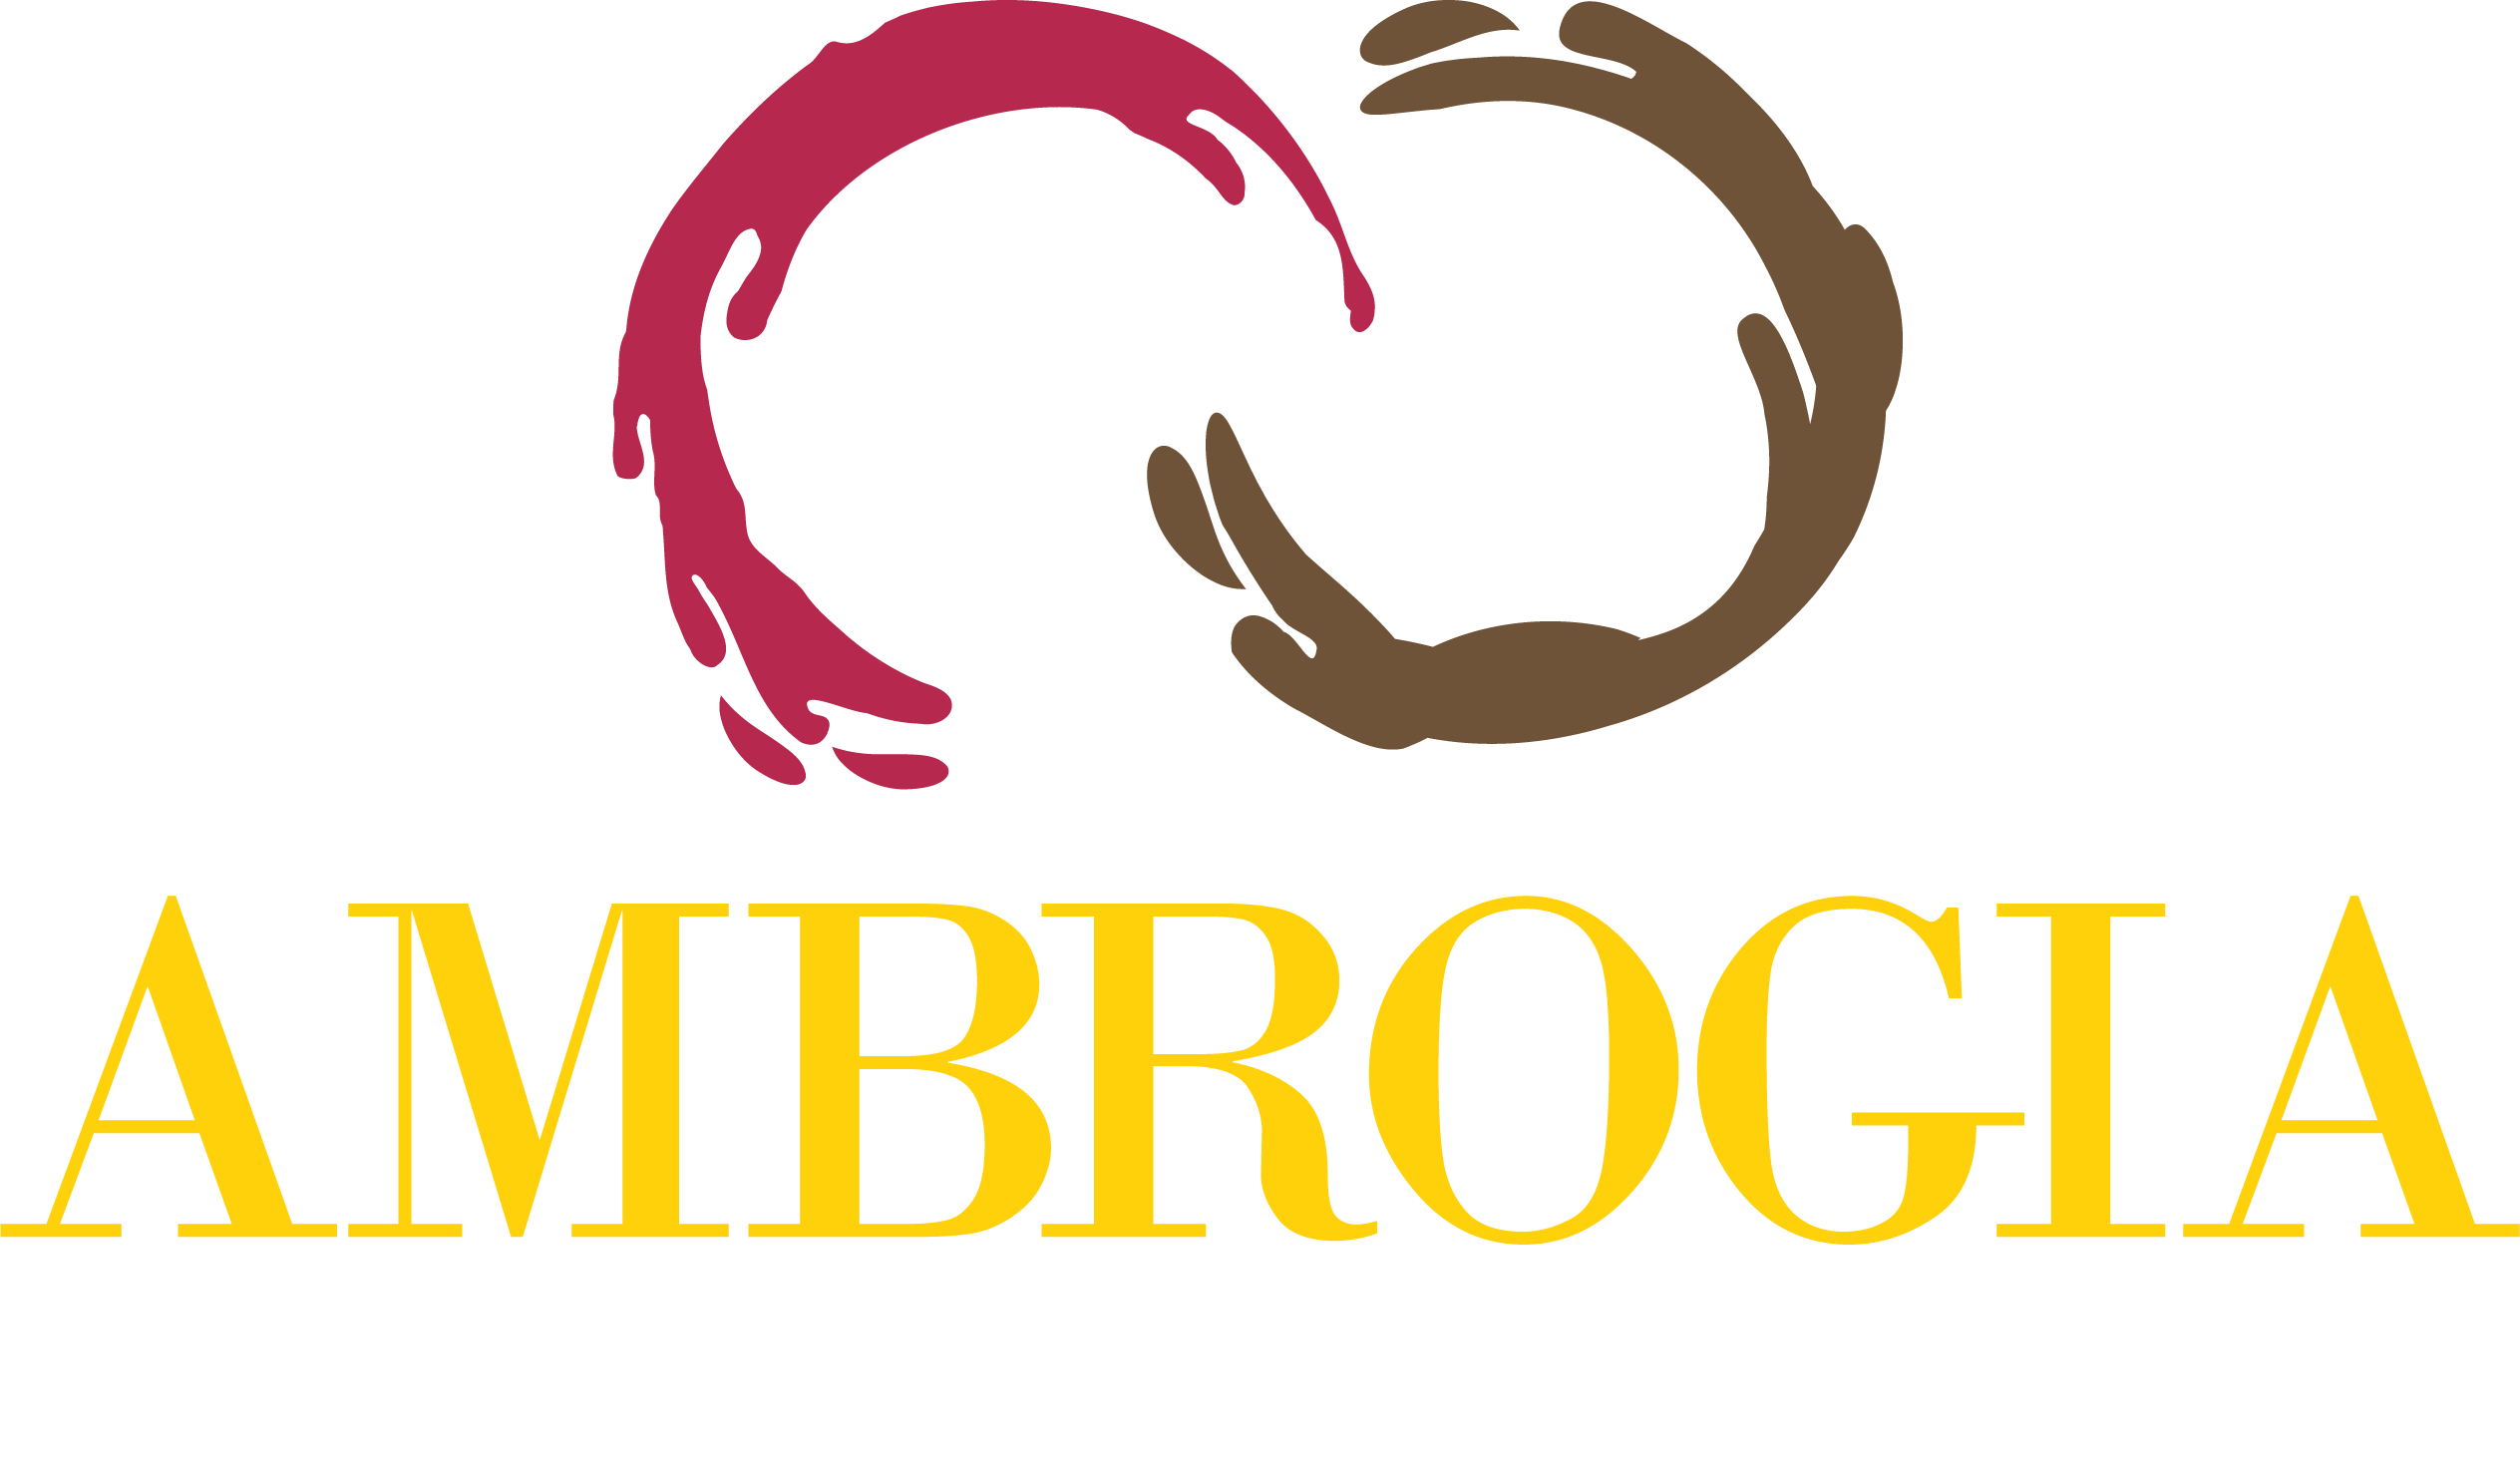 Ambrogia Caffe & Enoteca